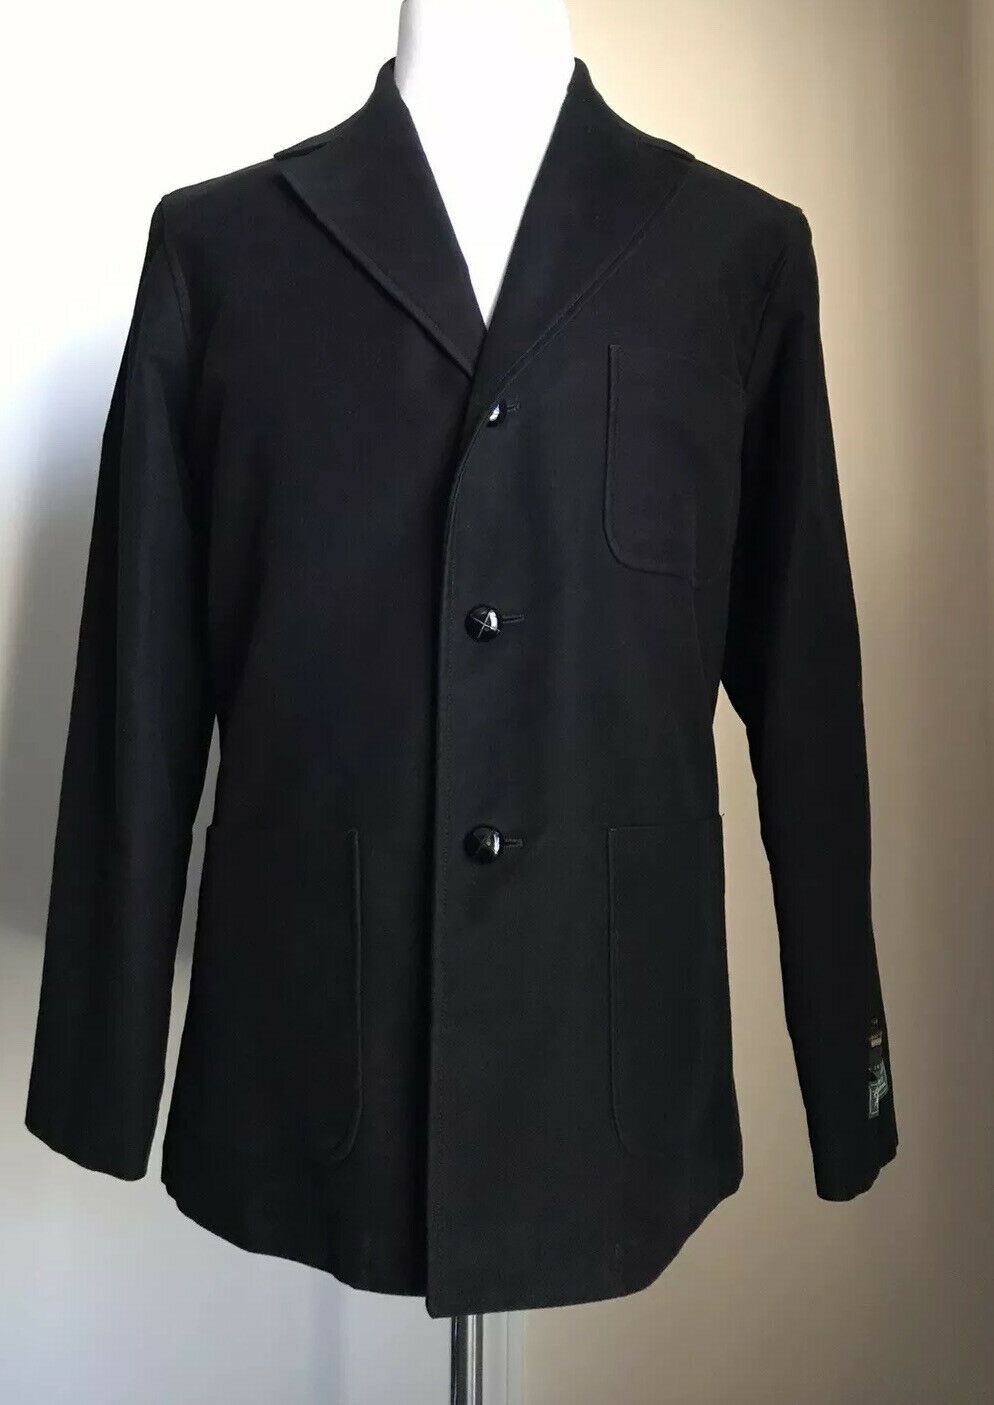 Новое мужское пальто Gucci из хлопка с молескином и кожей за 2400 долларов, черный 42 США (52 ЕС)